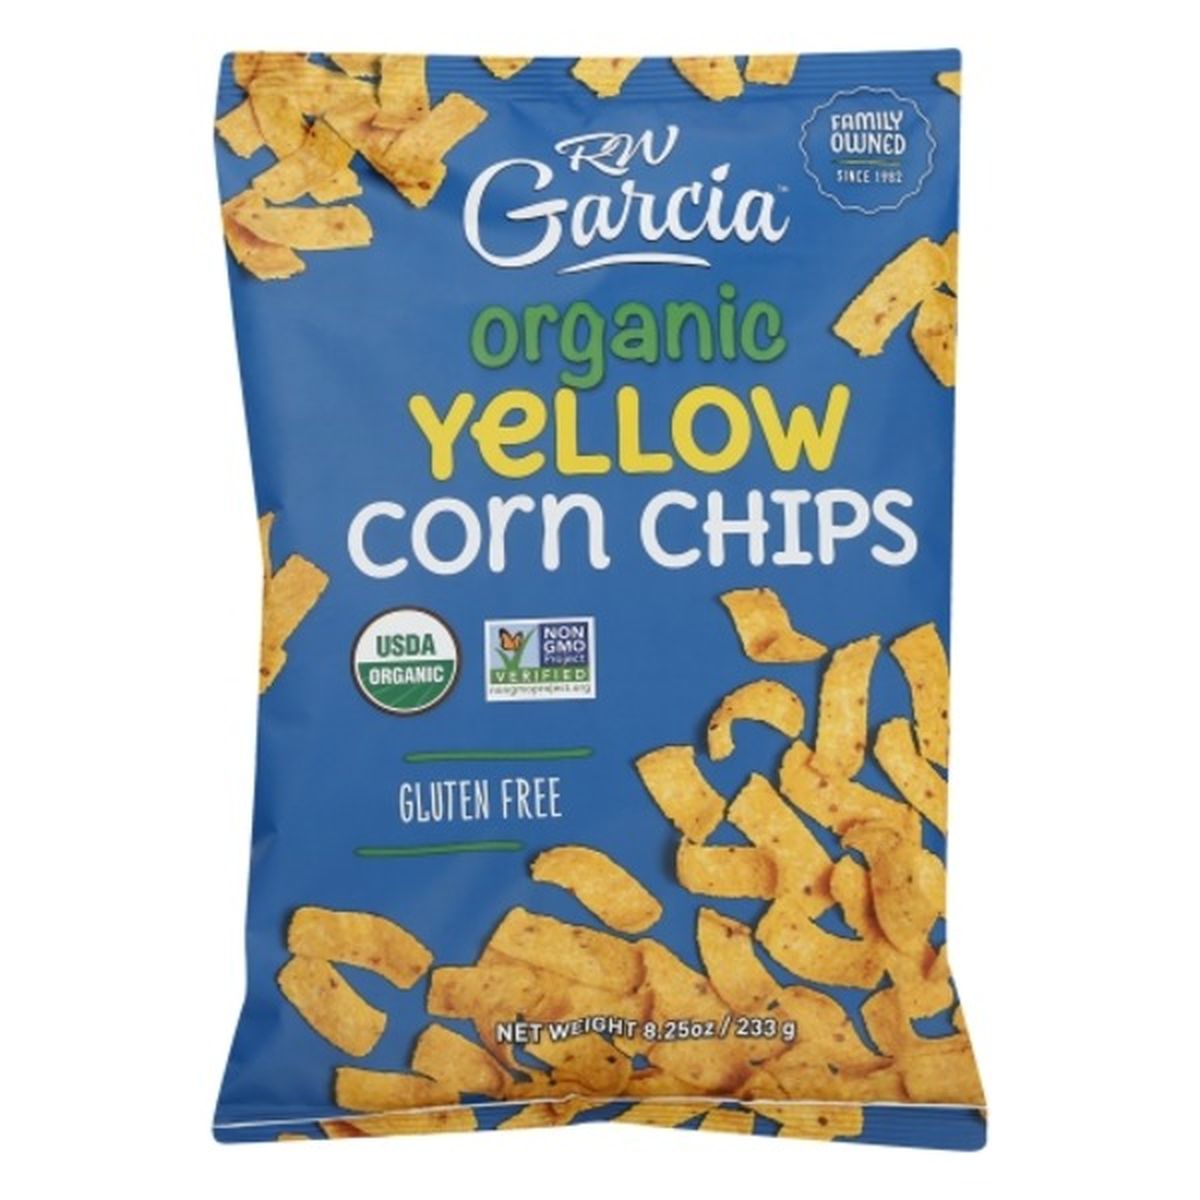 Calories in RW Garcia Corn Chips, Organic, Yellow